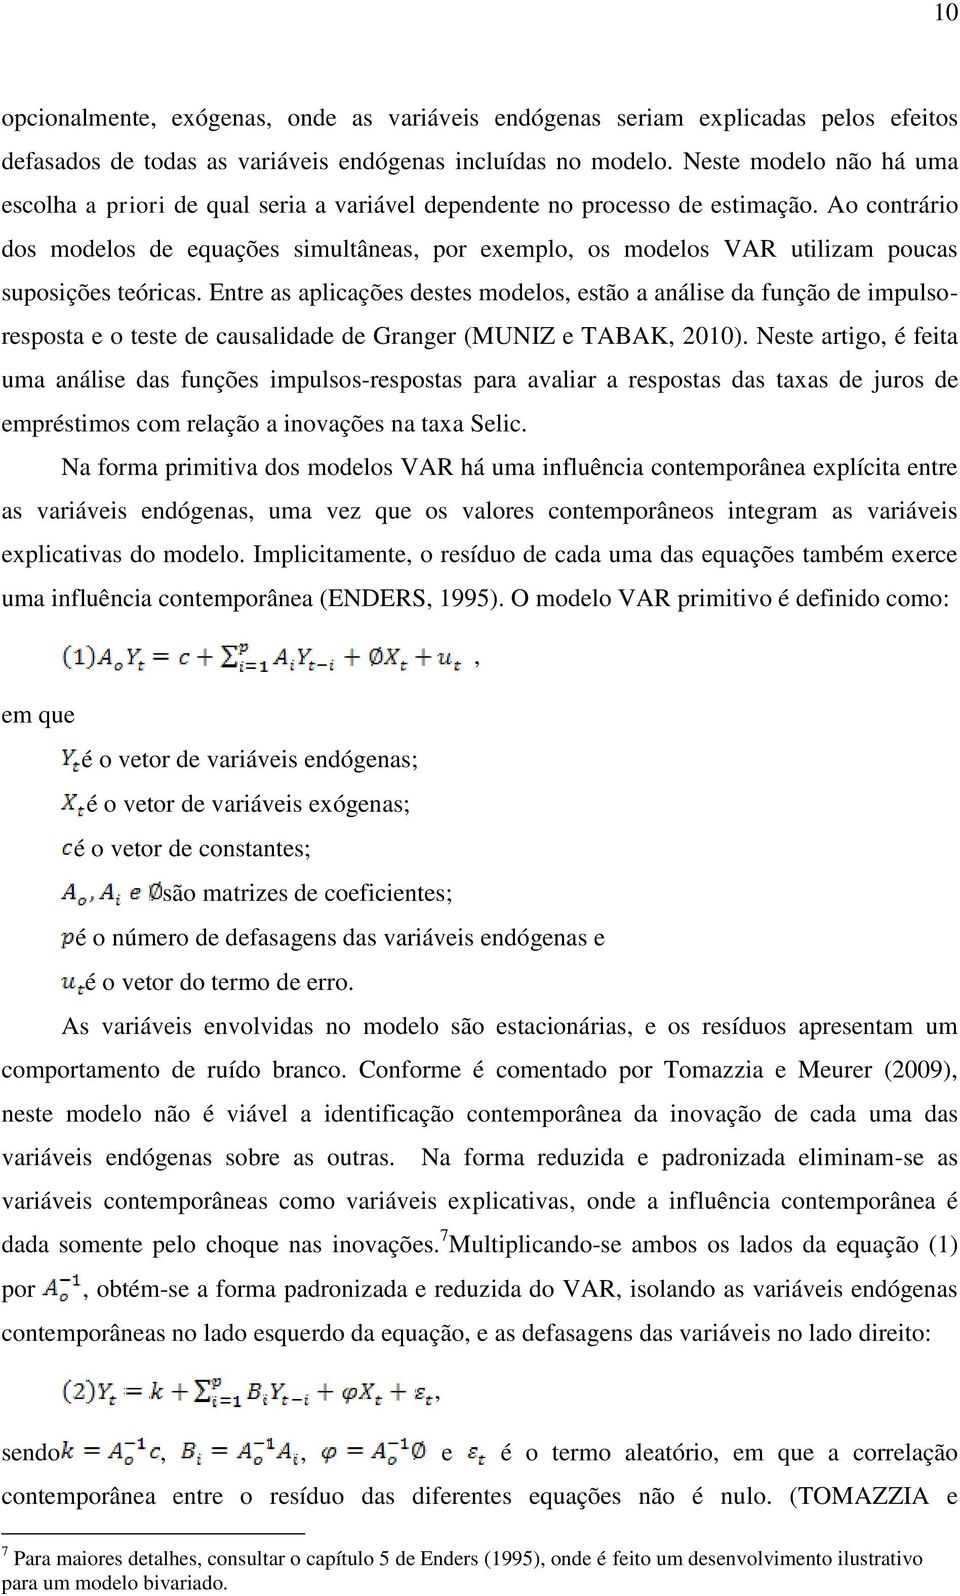 Ao contrário dos modelos de equações simultâneas, por exemplo, os modelos VAR utilizam poucas suposições teóricas.